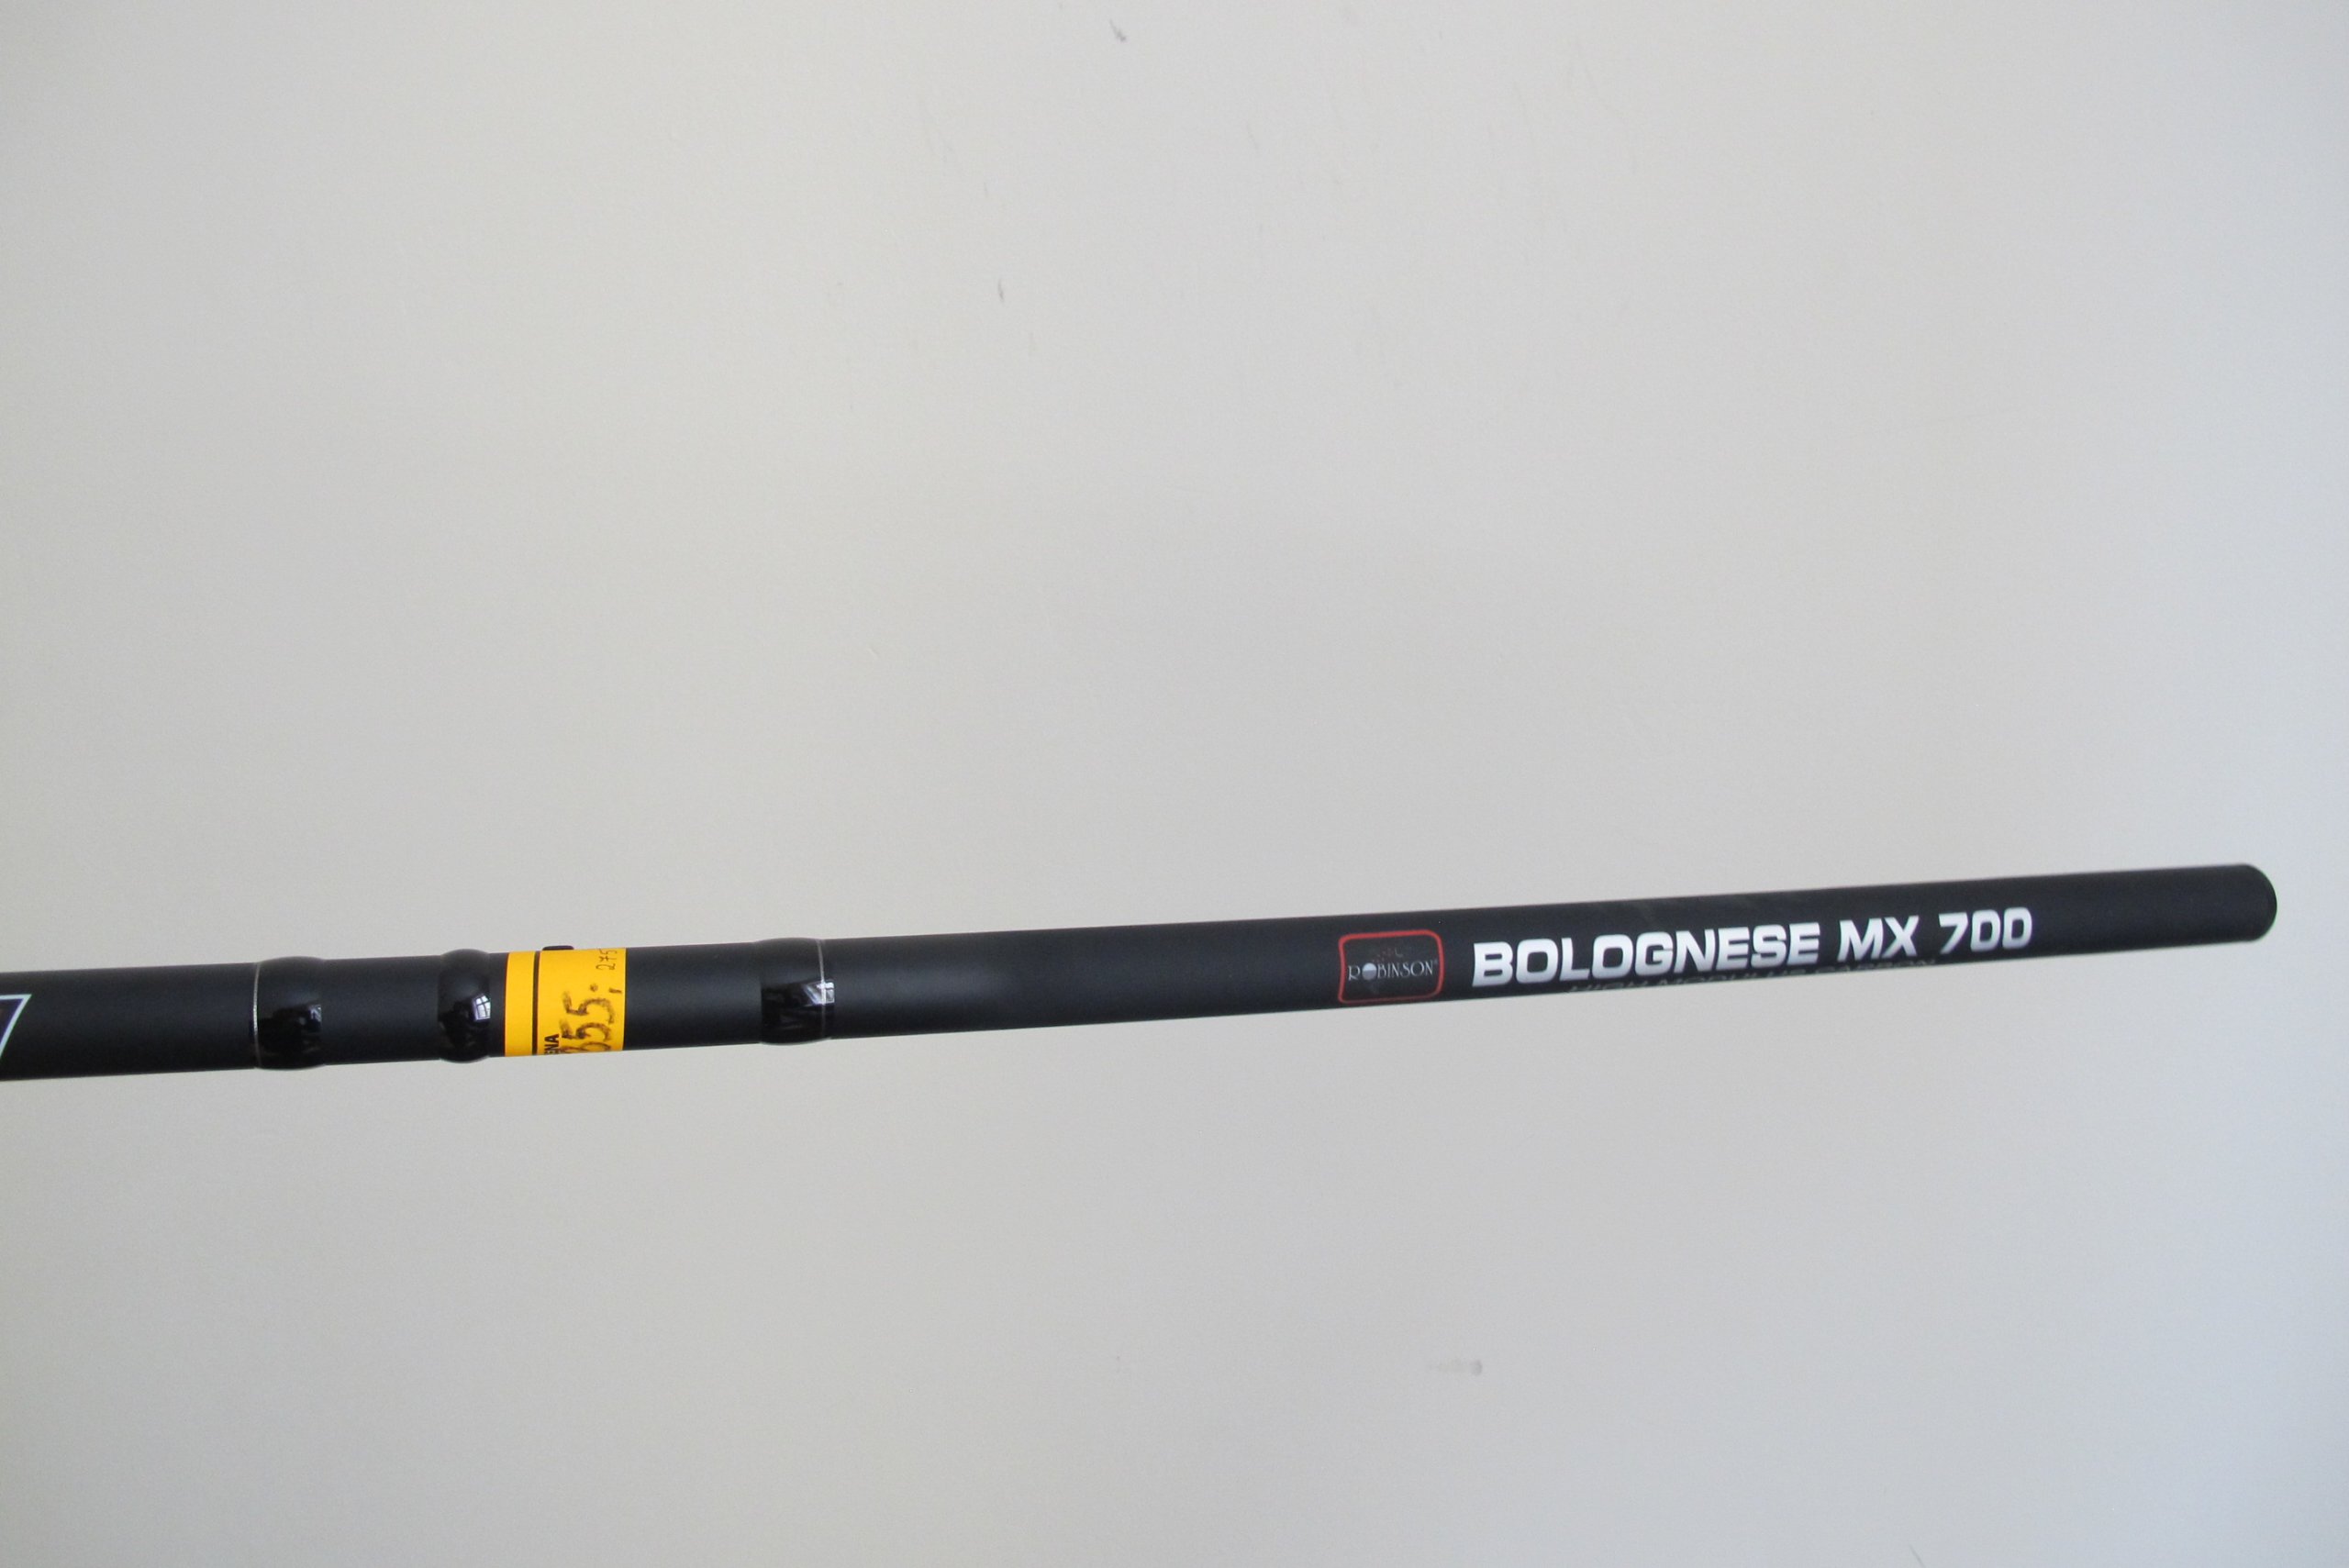 Wędka Robinson Bolognese MX700